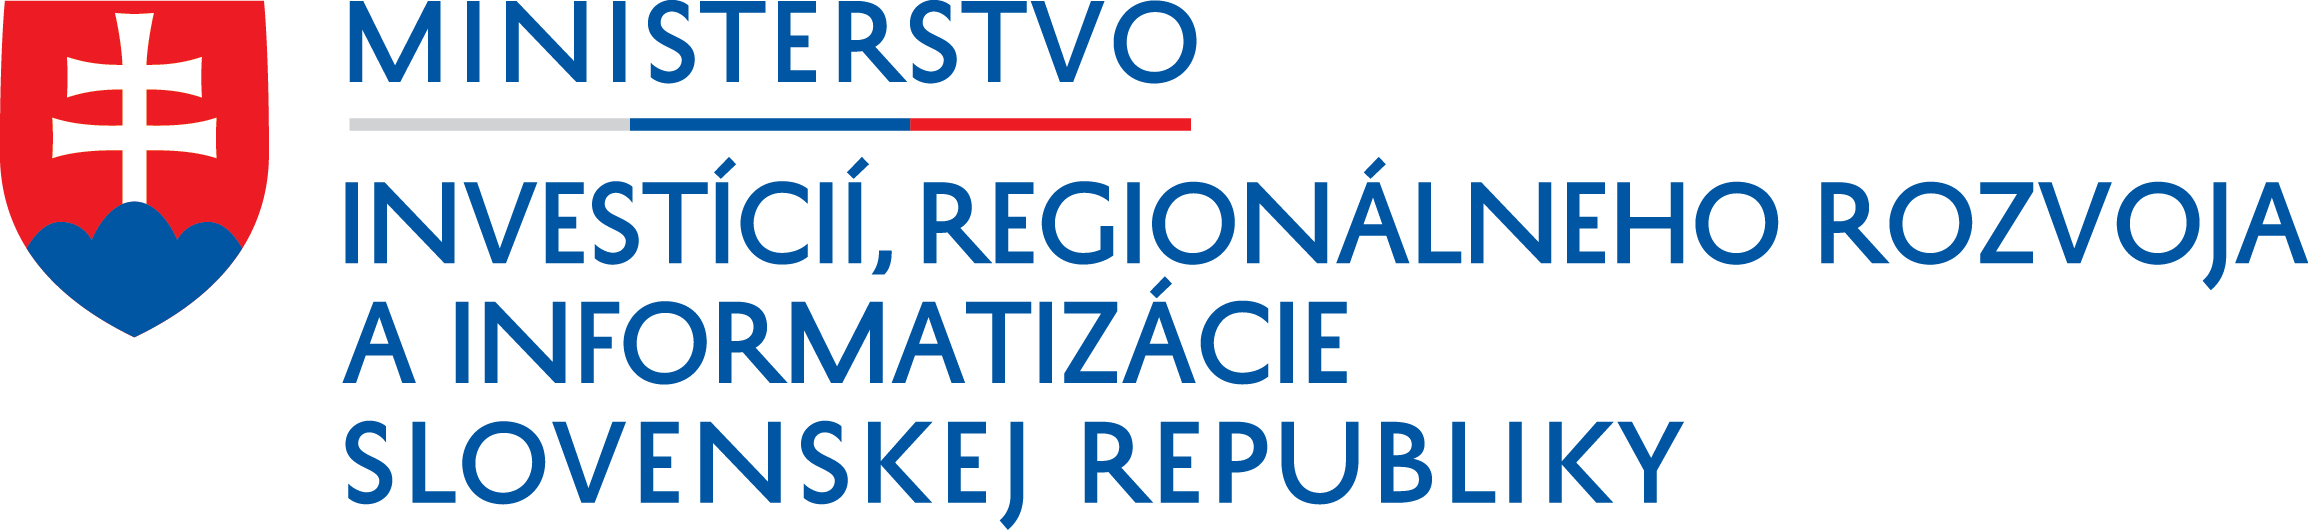 Ministerstvo investícií, regionálneho rozvoja a informatizácie Slovenskej republiky